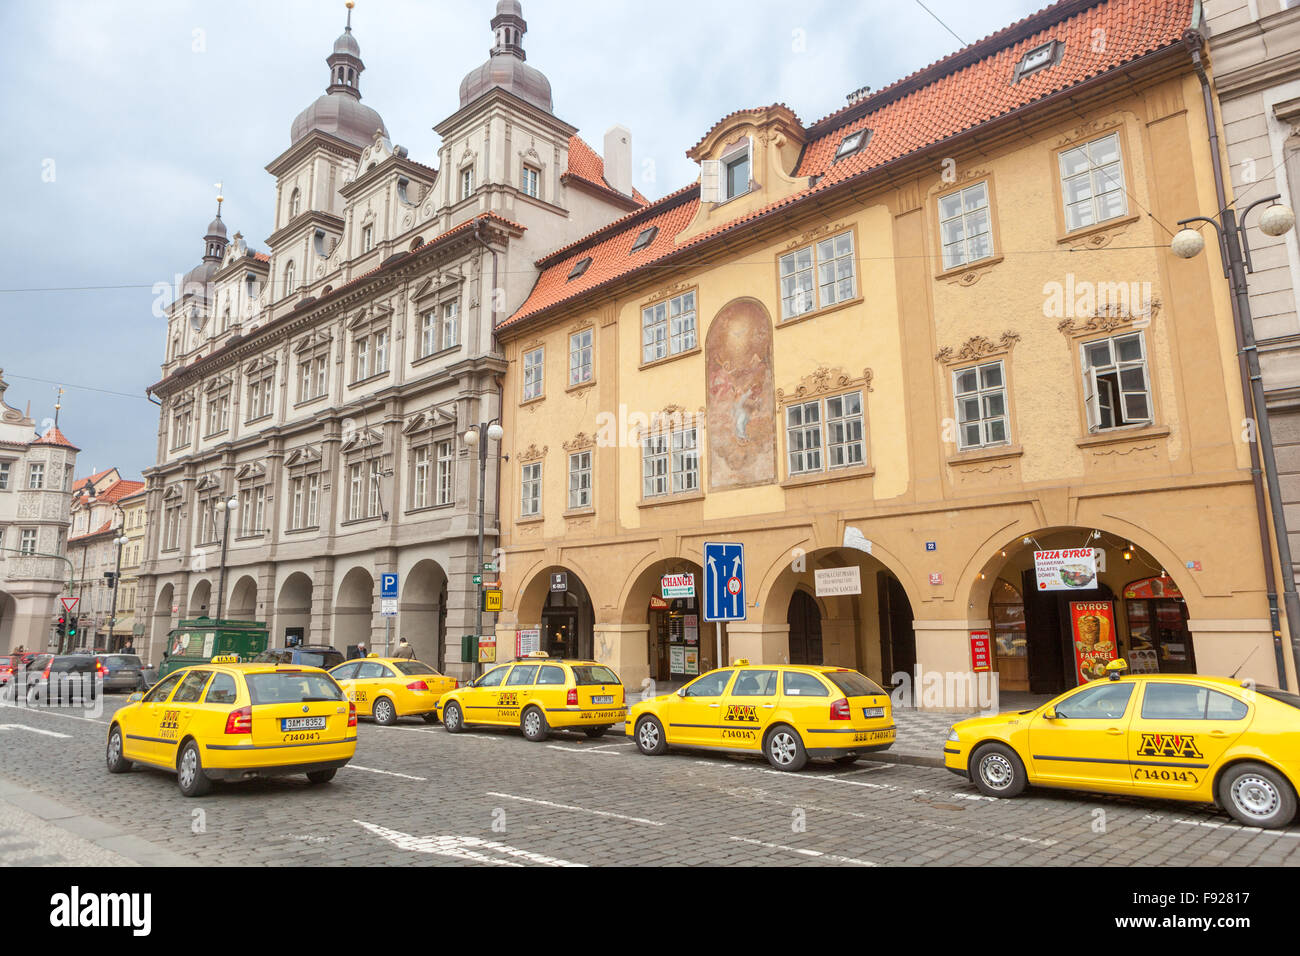 Taxi taxi, petite place de la ville, place Malostranske namesti, Prague, République tchèque Banque D'Images